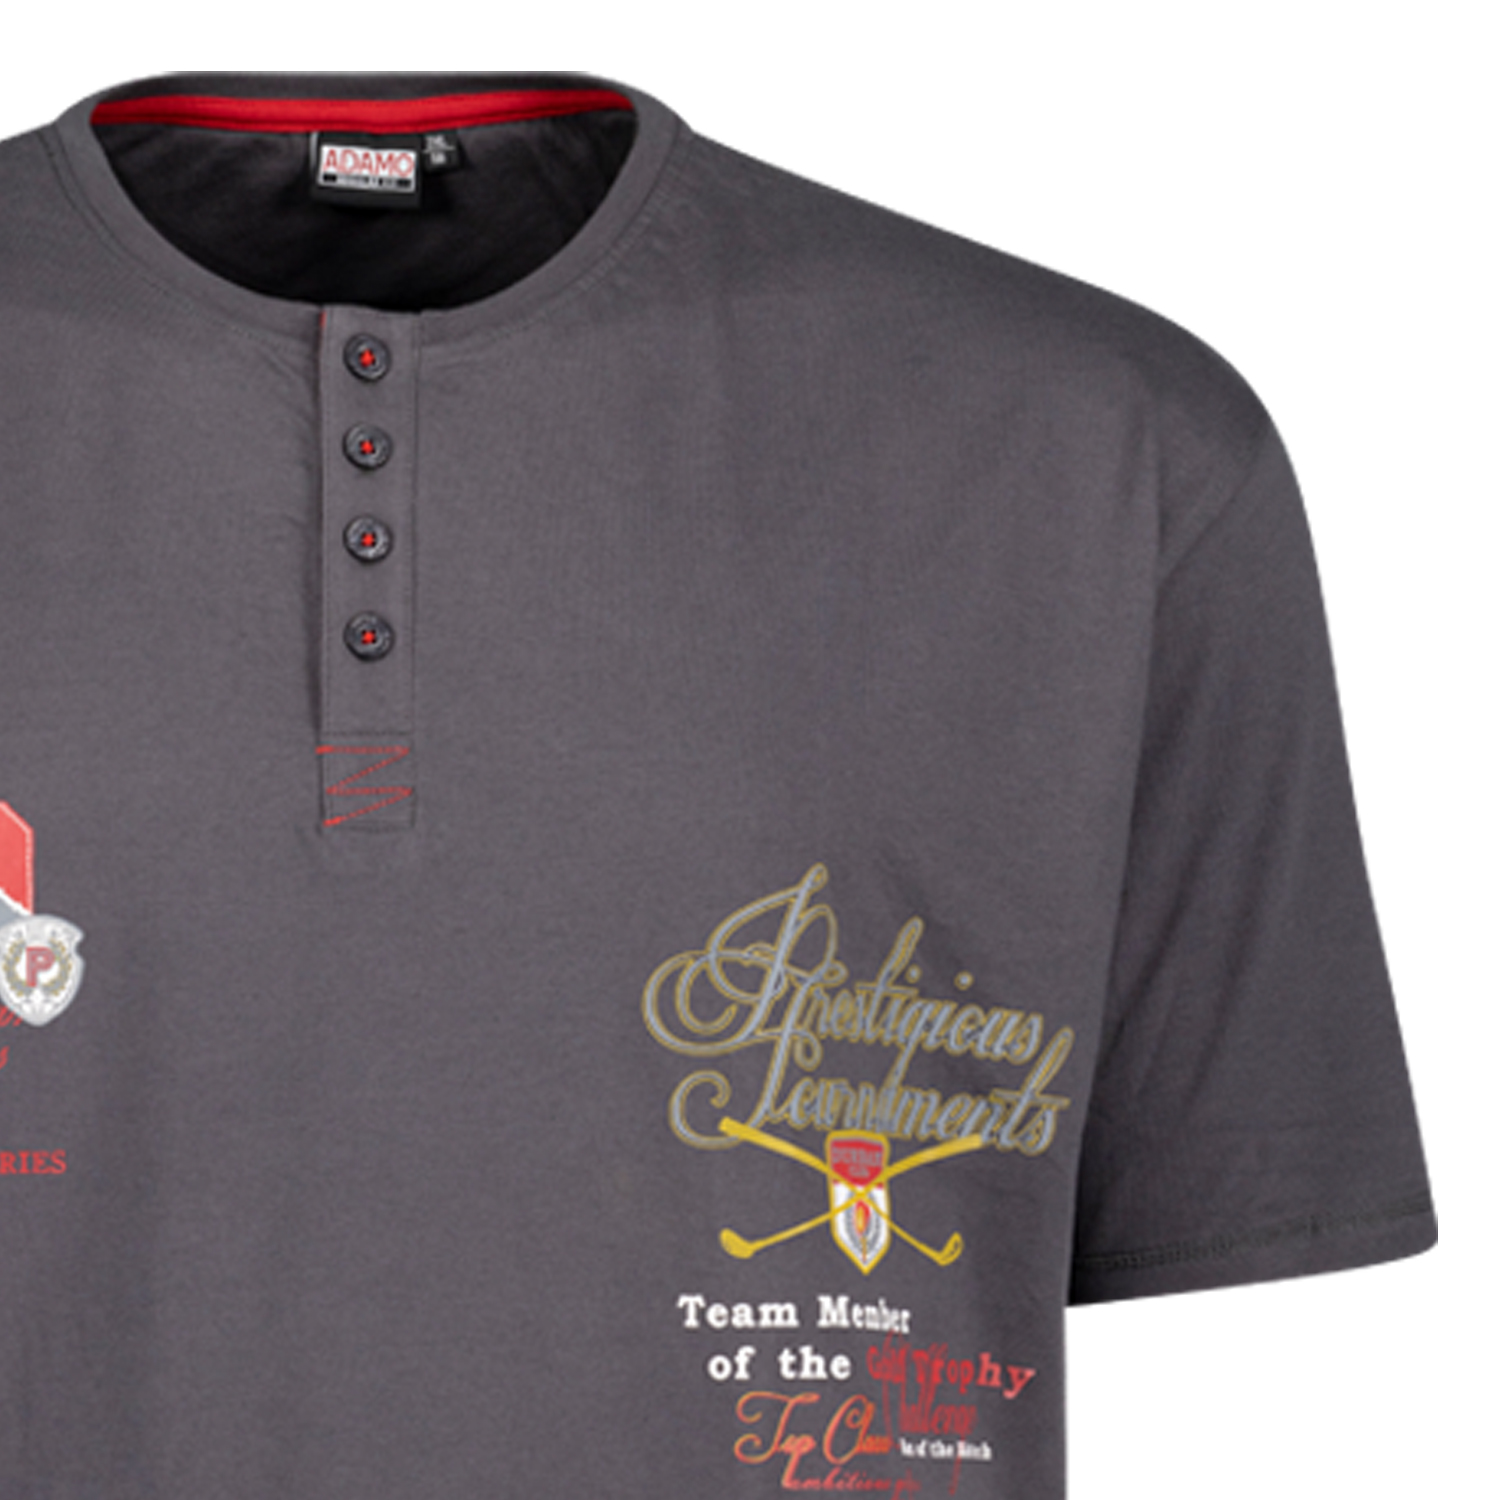 Graues Herren Serafino T-Shirt mit Print REGULAR FIT von Adamo Serie DUNDEE in Übergrößen bis 12XL